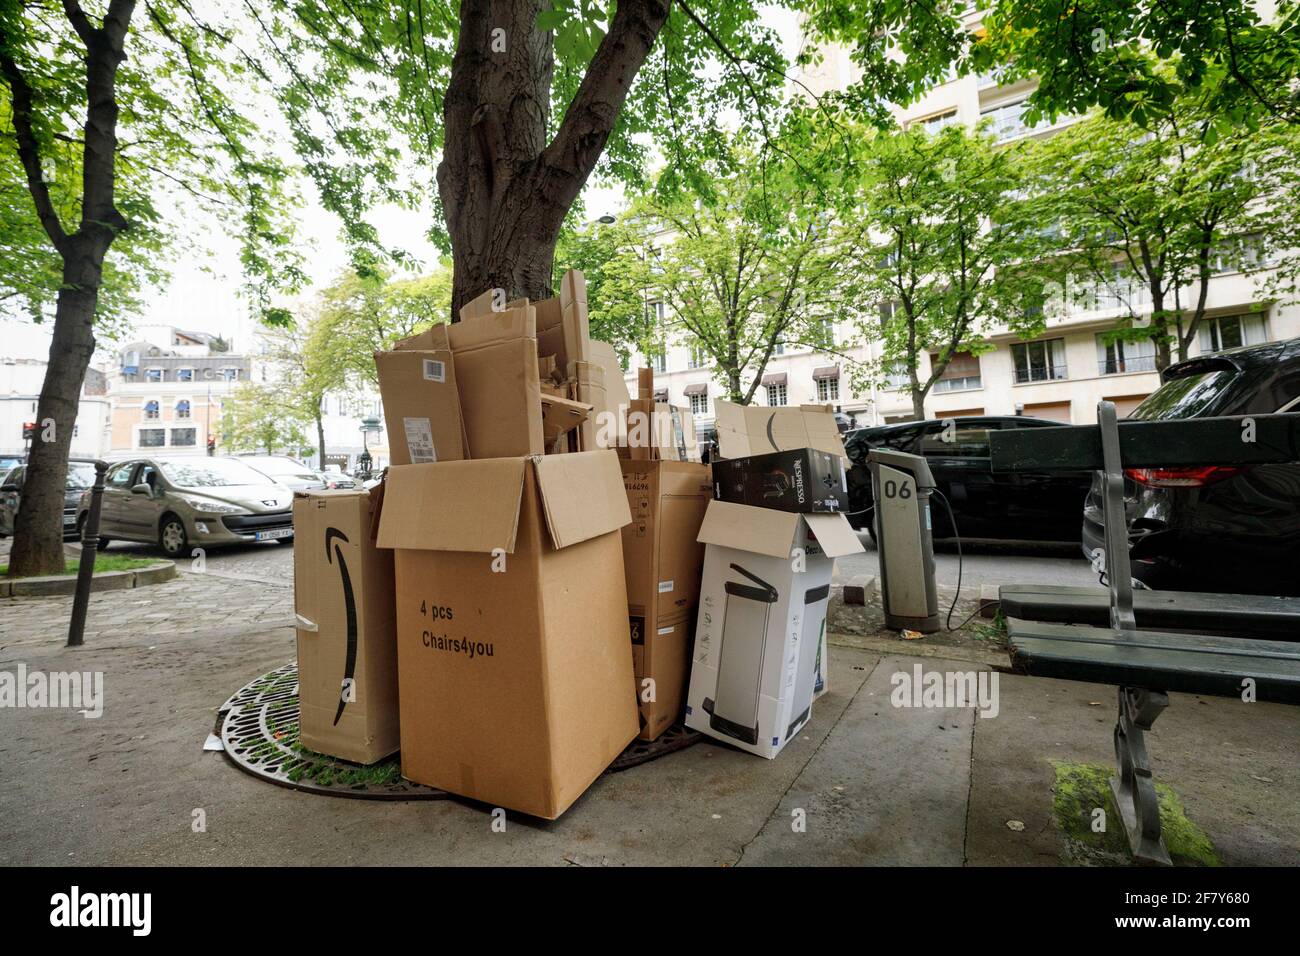 Paris, France. 09e avril 2021. Des boîtes en carton se trouvent sur le  trottoir dans le quartier de Passy, dans le 16ème arrondissement de Paris.  Les déchets encombrants sur le trottoir, les